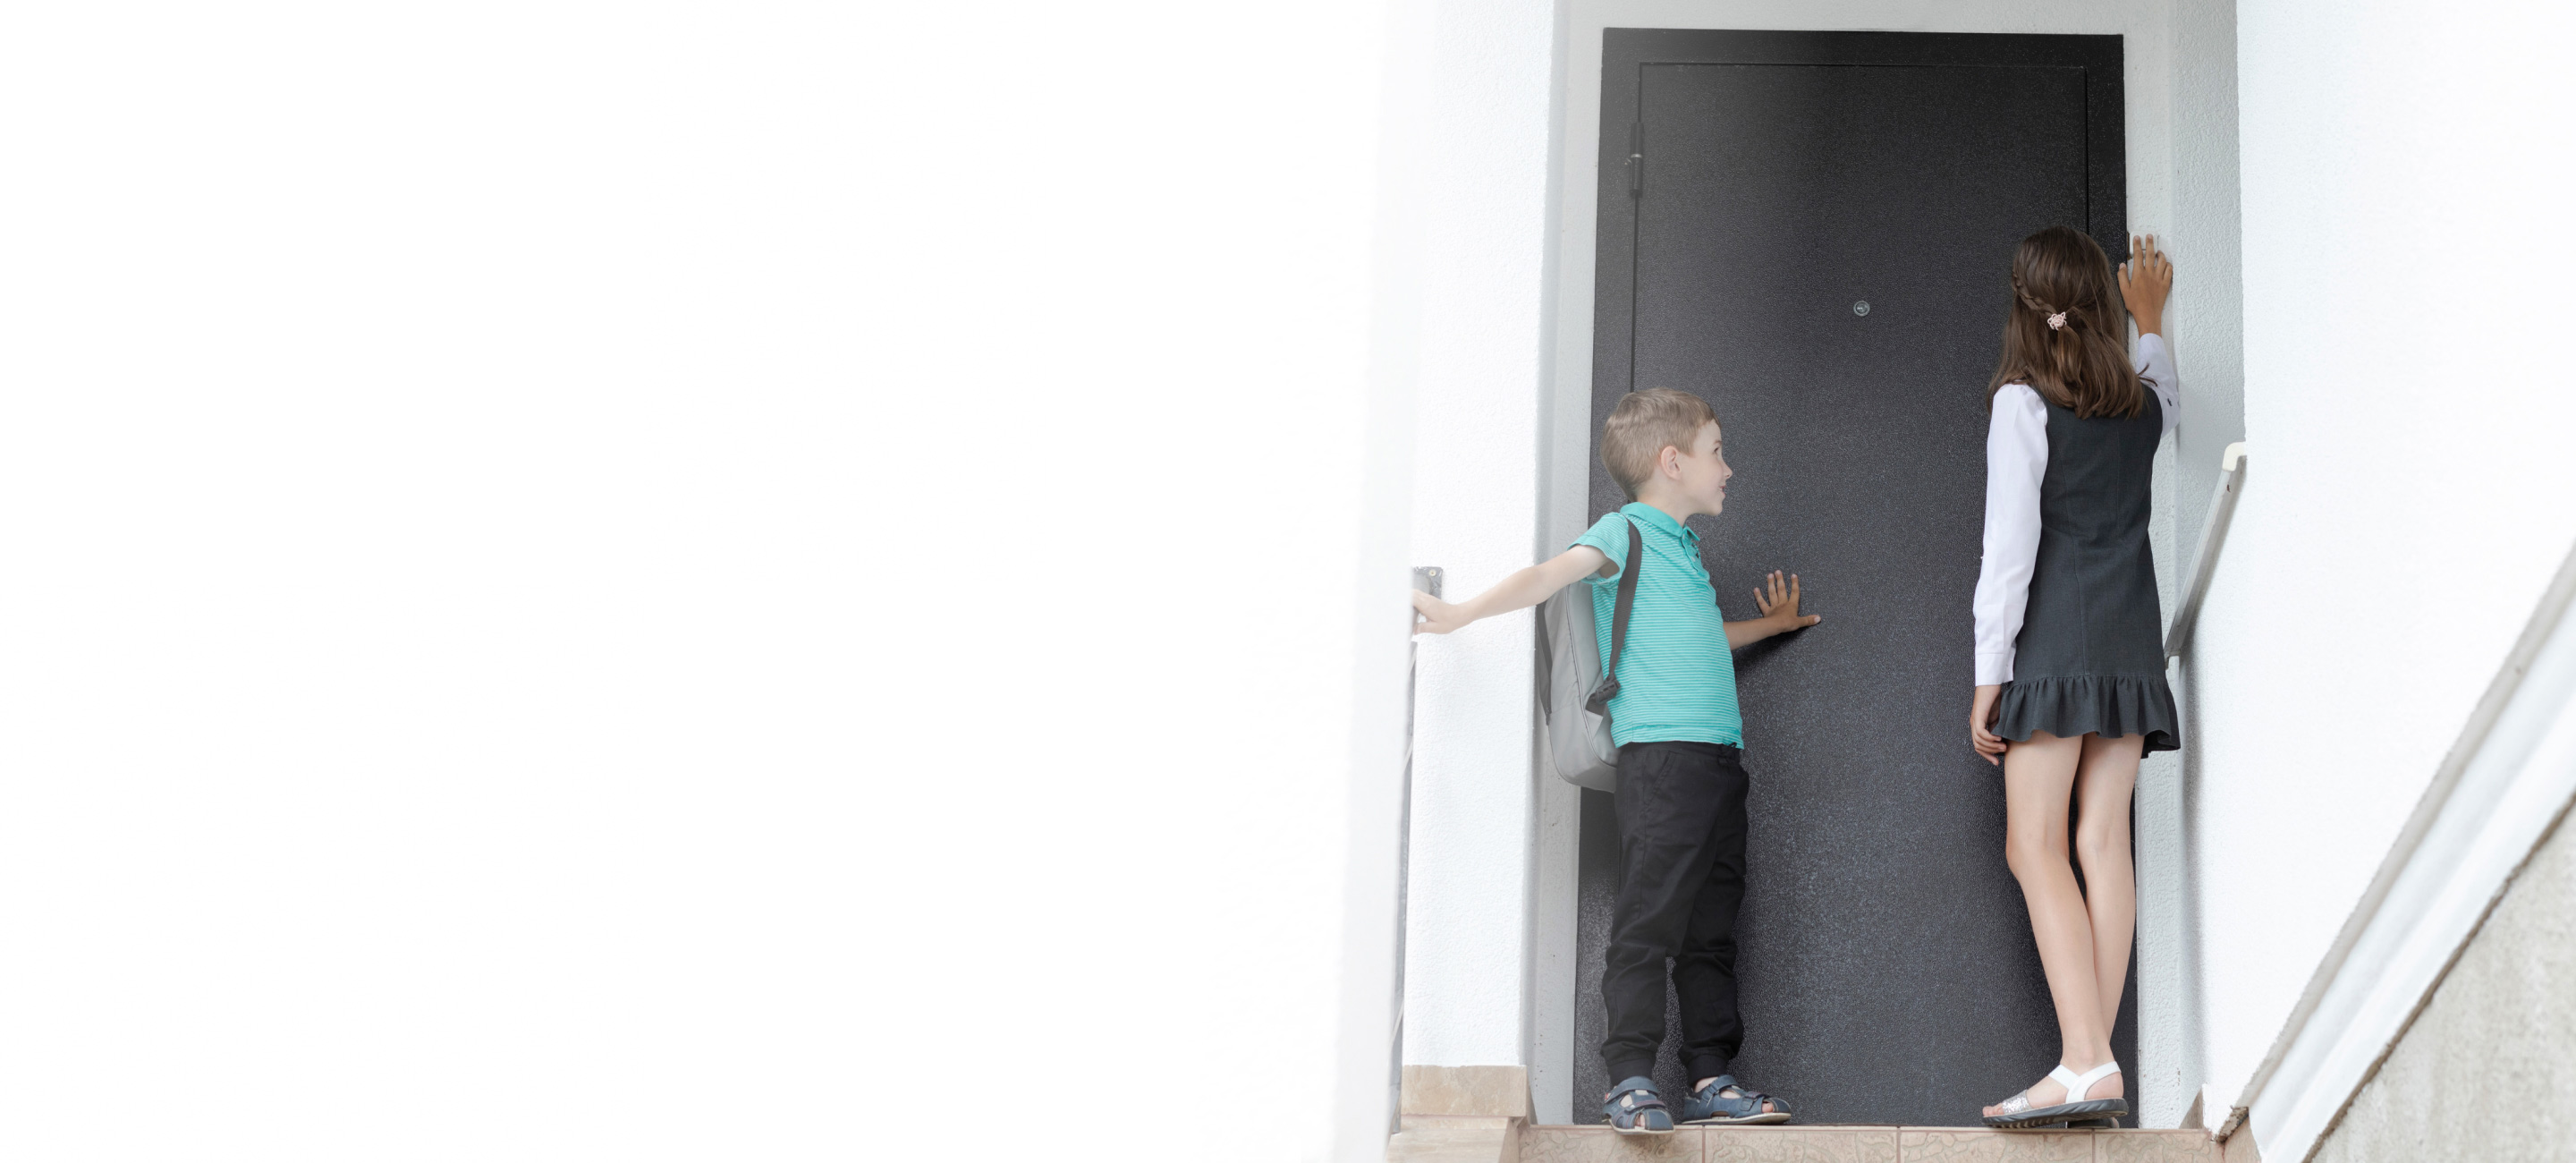 Children ringing doorbell